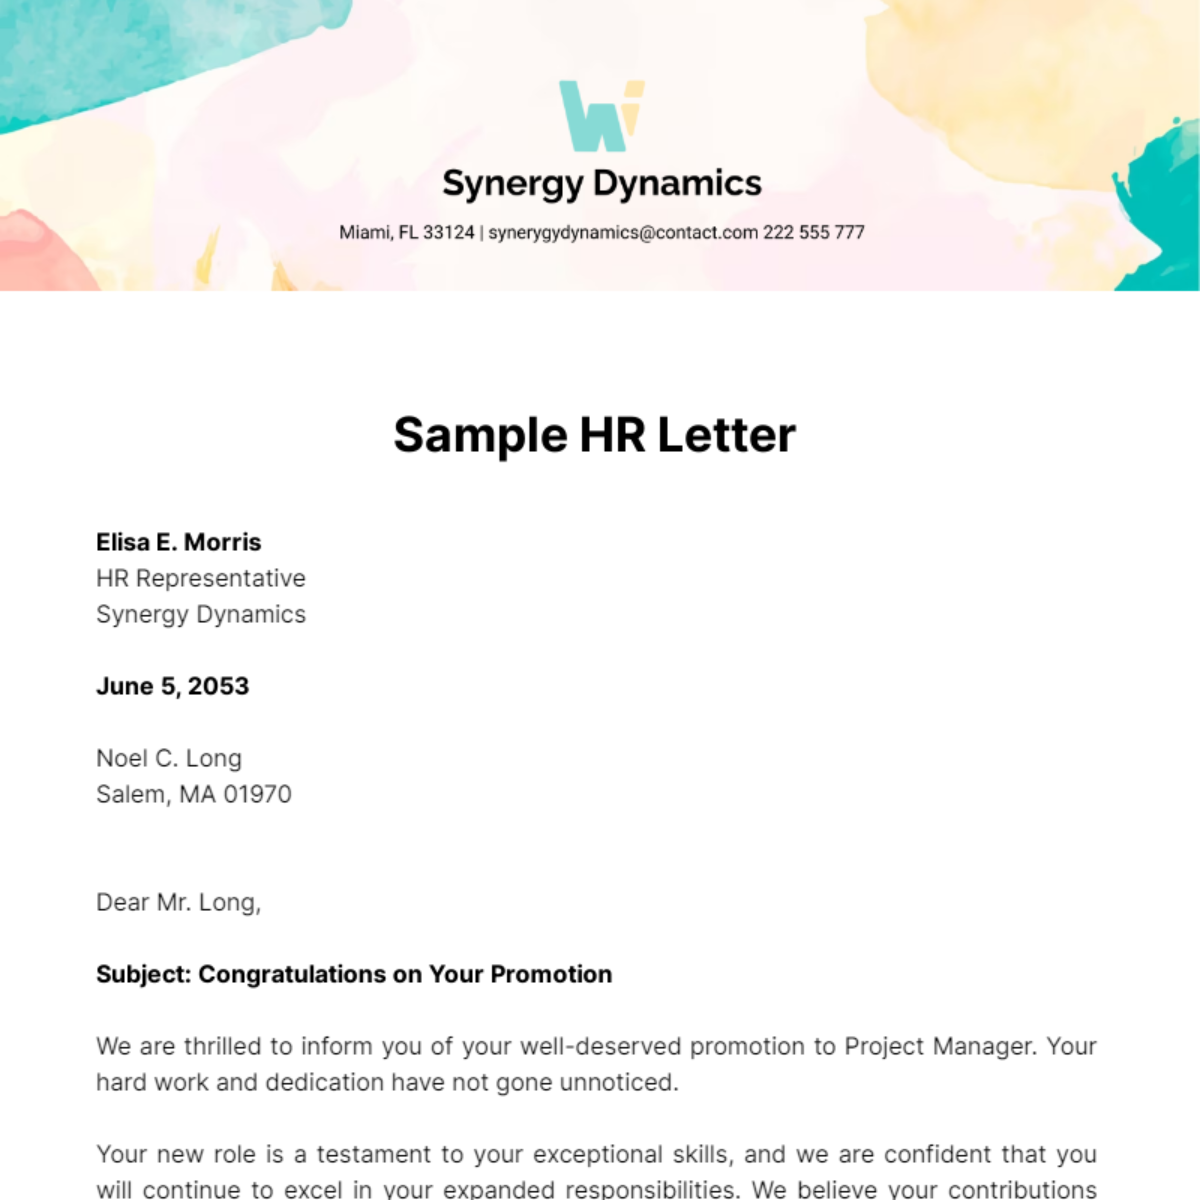 Sample HR Letter Template